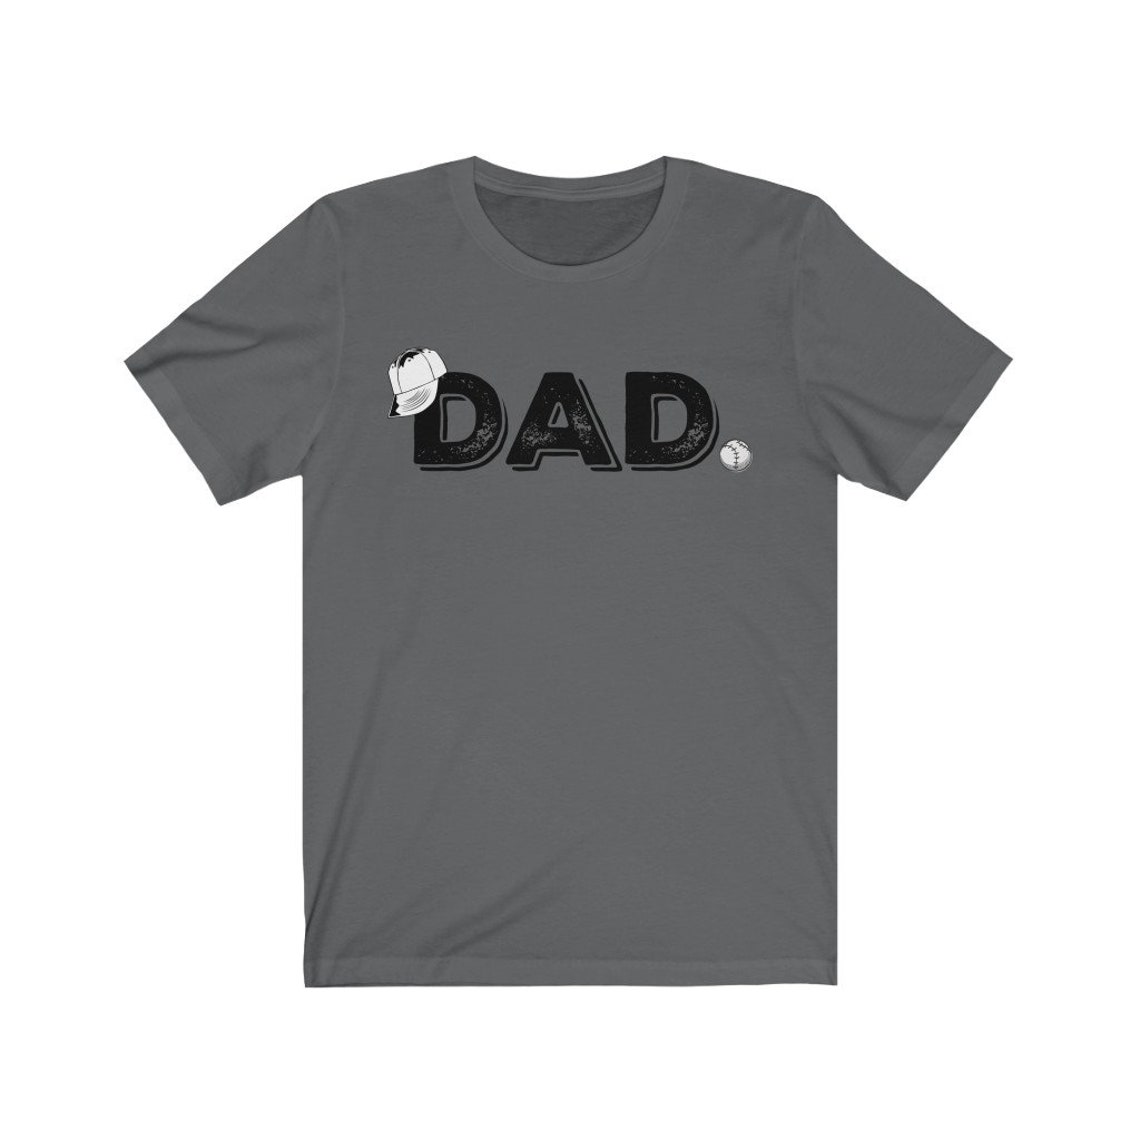 Baseball Dad T-Shirt Dad Baseball Shirt Baseball Tshirt | Etsy